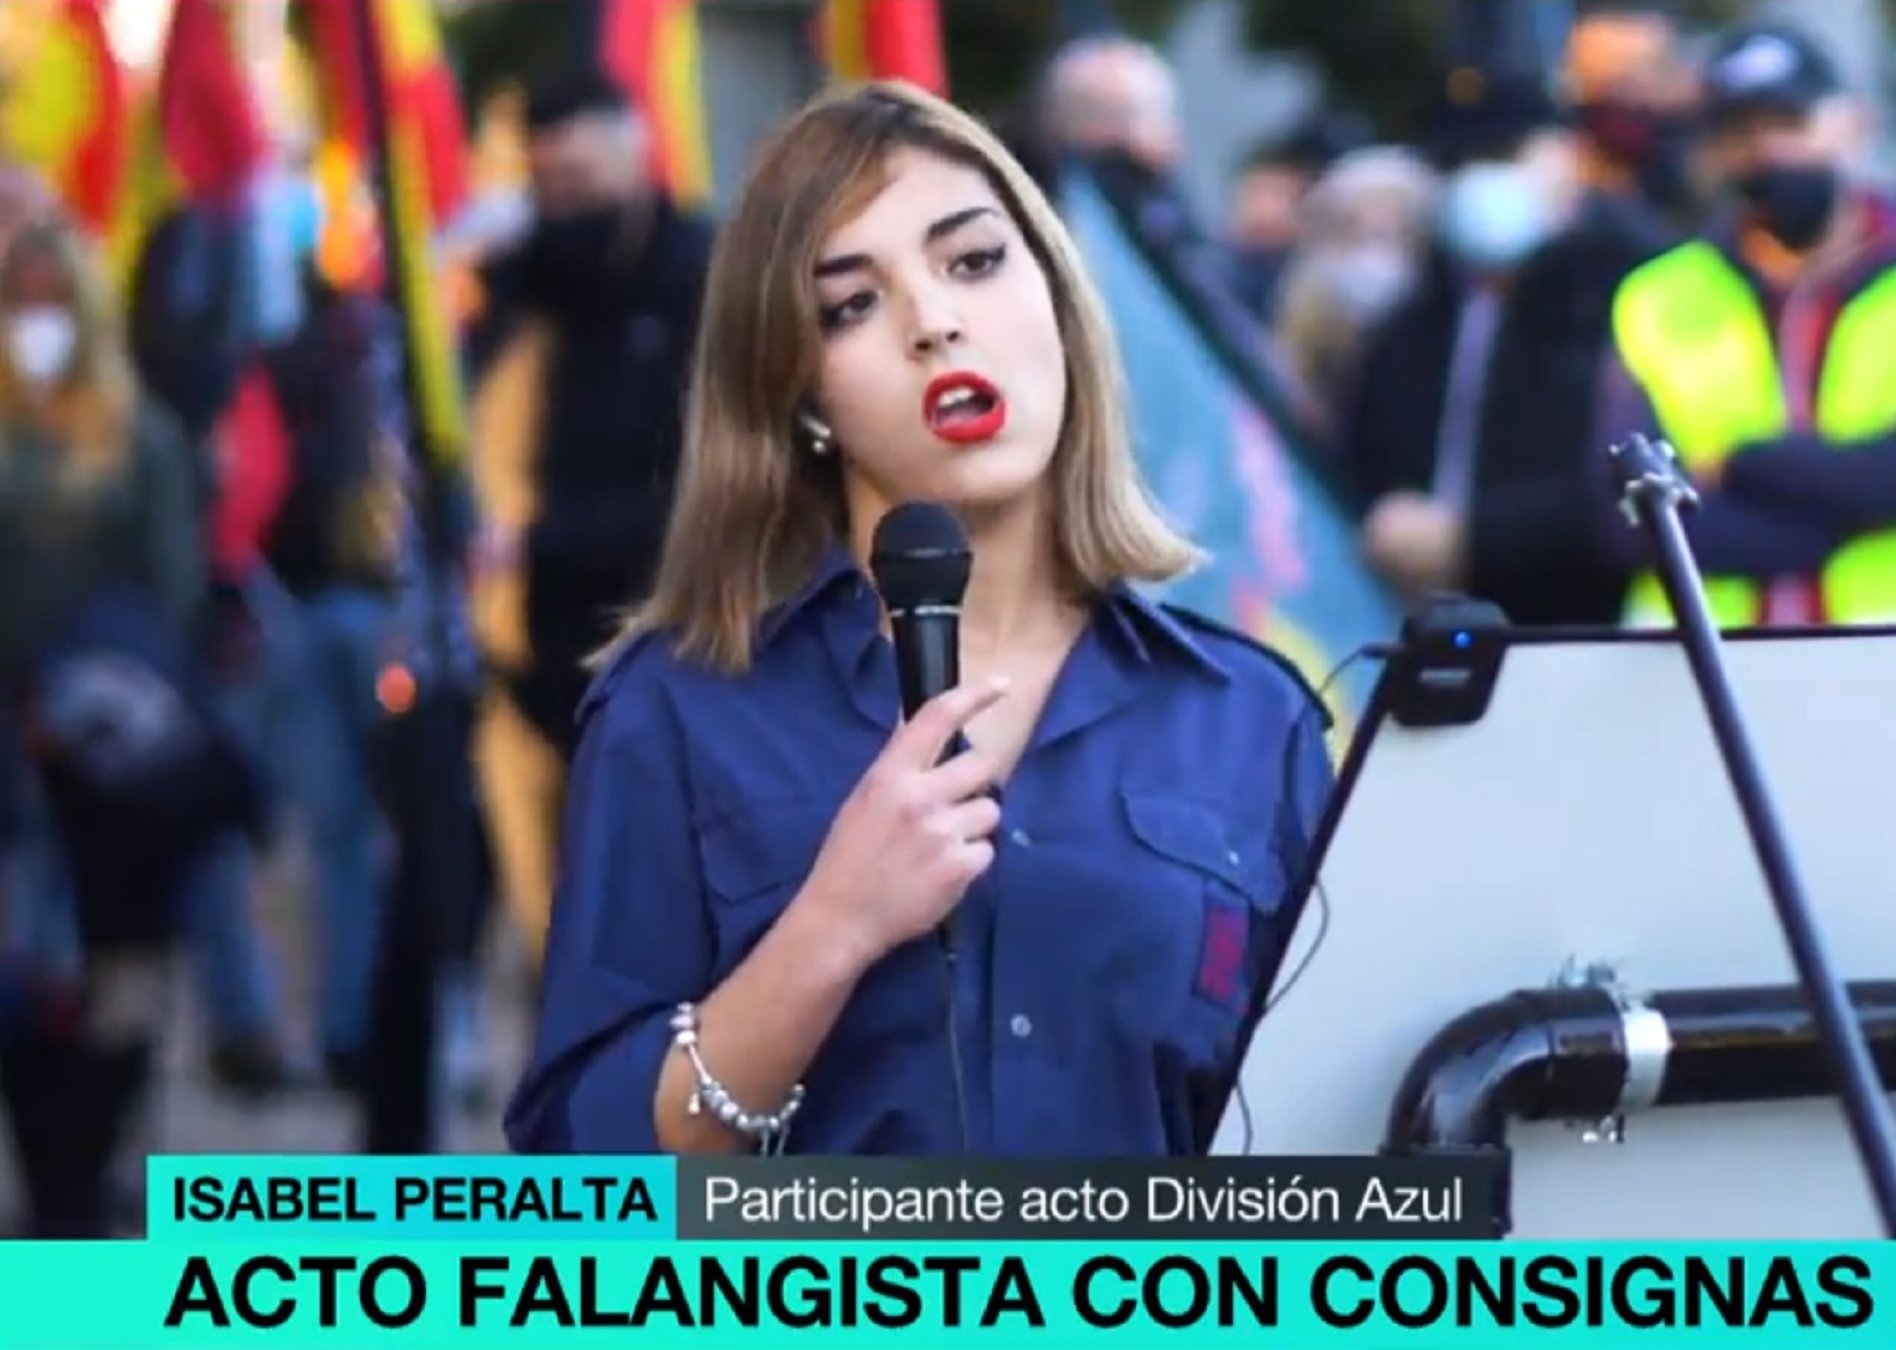 ¿La joven facha de Madrid, pillada en una manifestación ultra en Alemania?